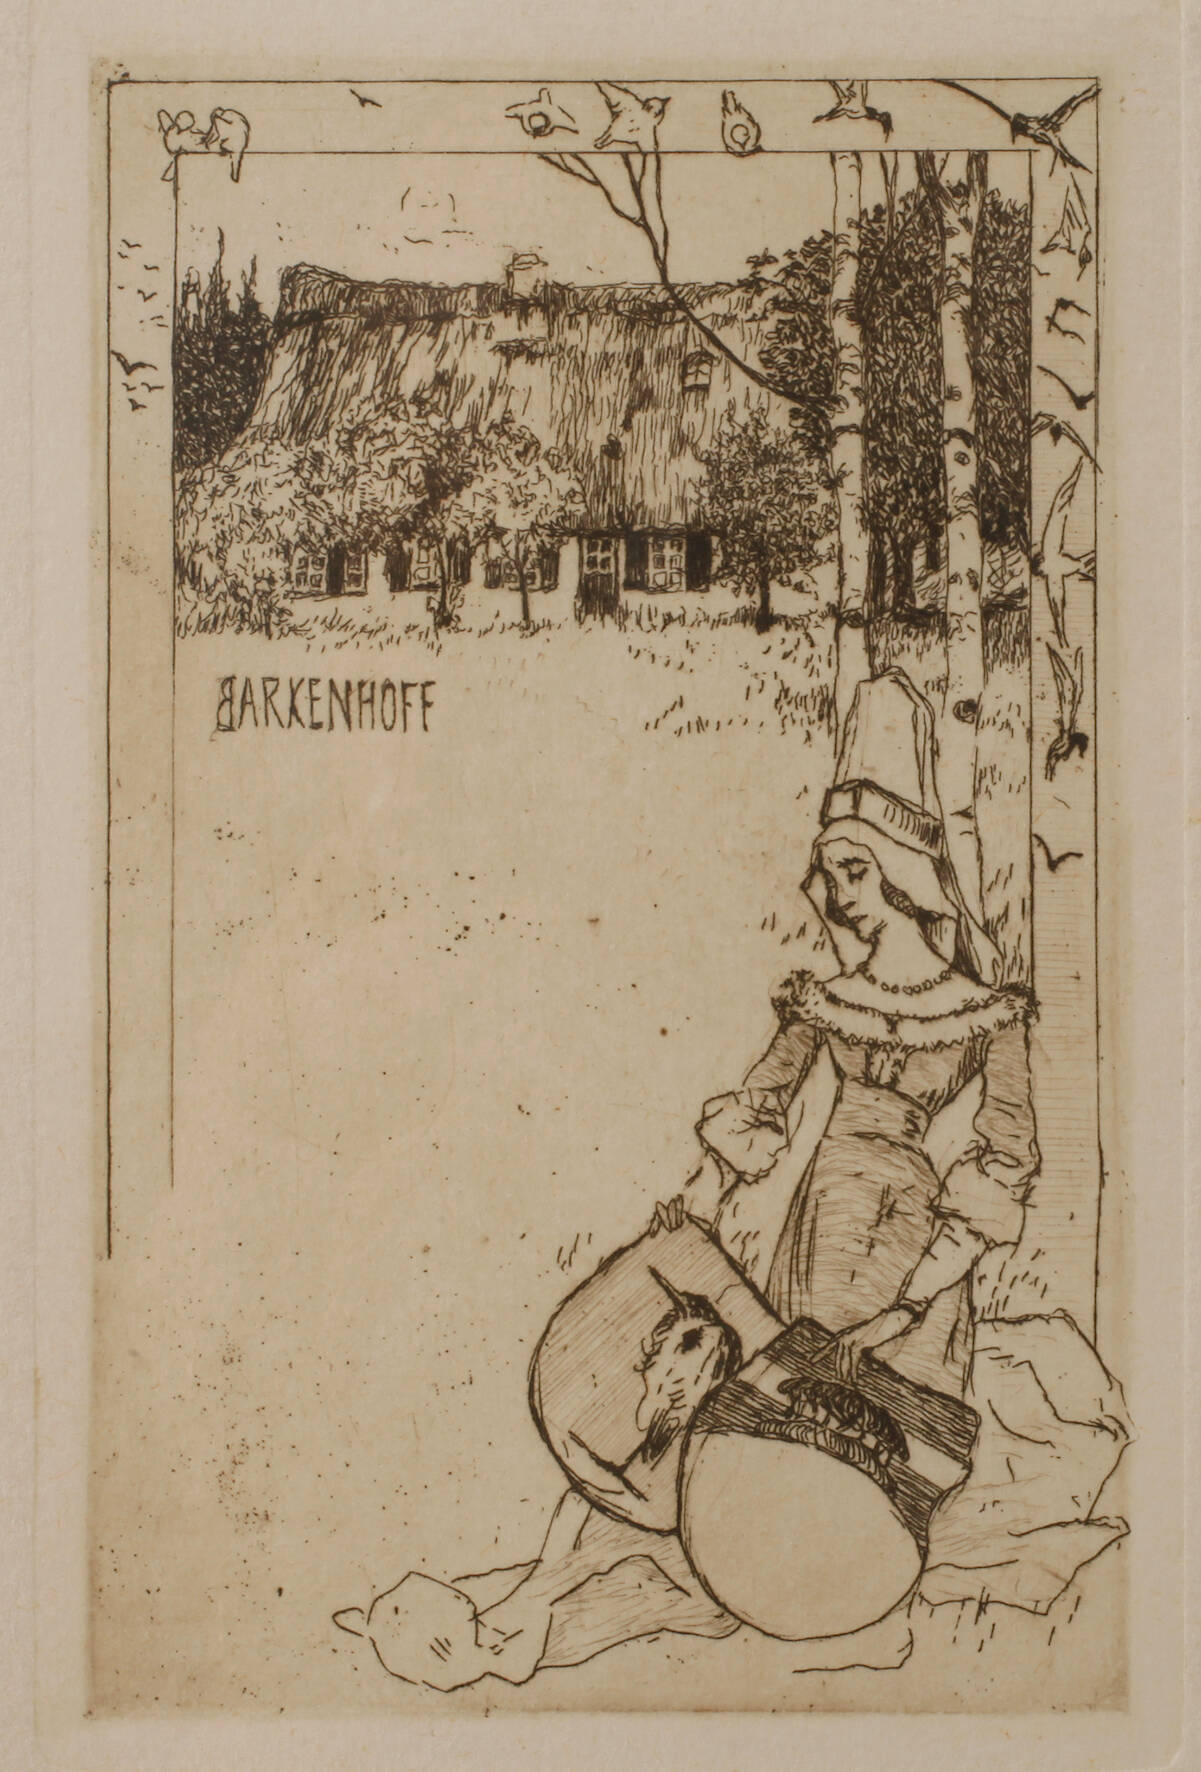 Heinrich Vogeler, attr., "Barkenhoff"